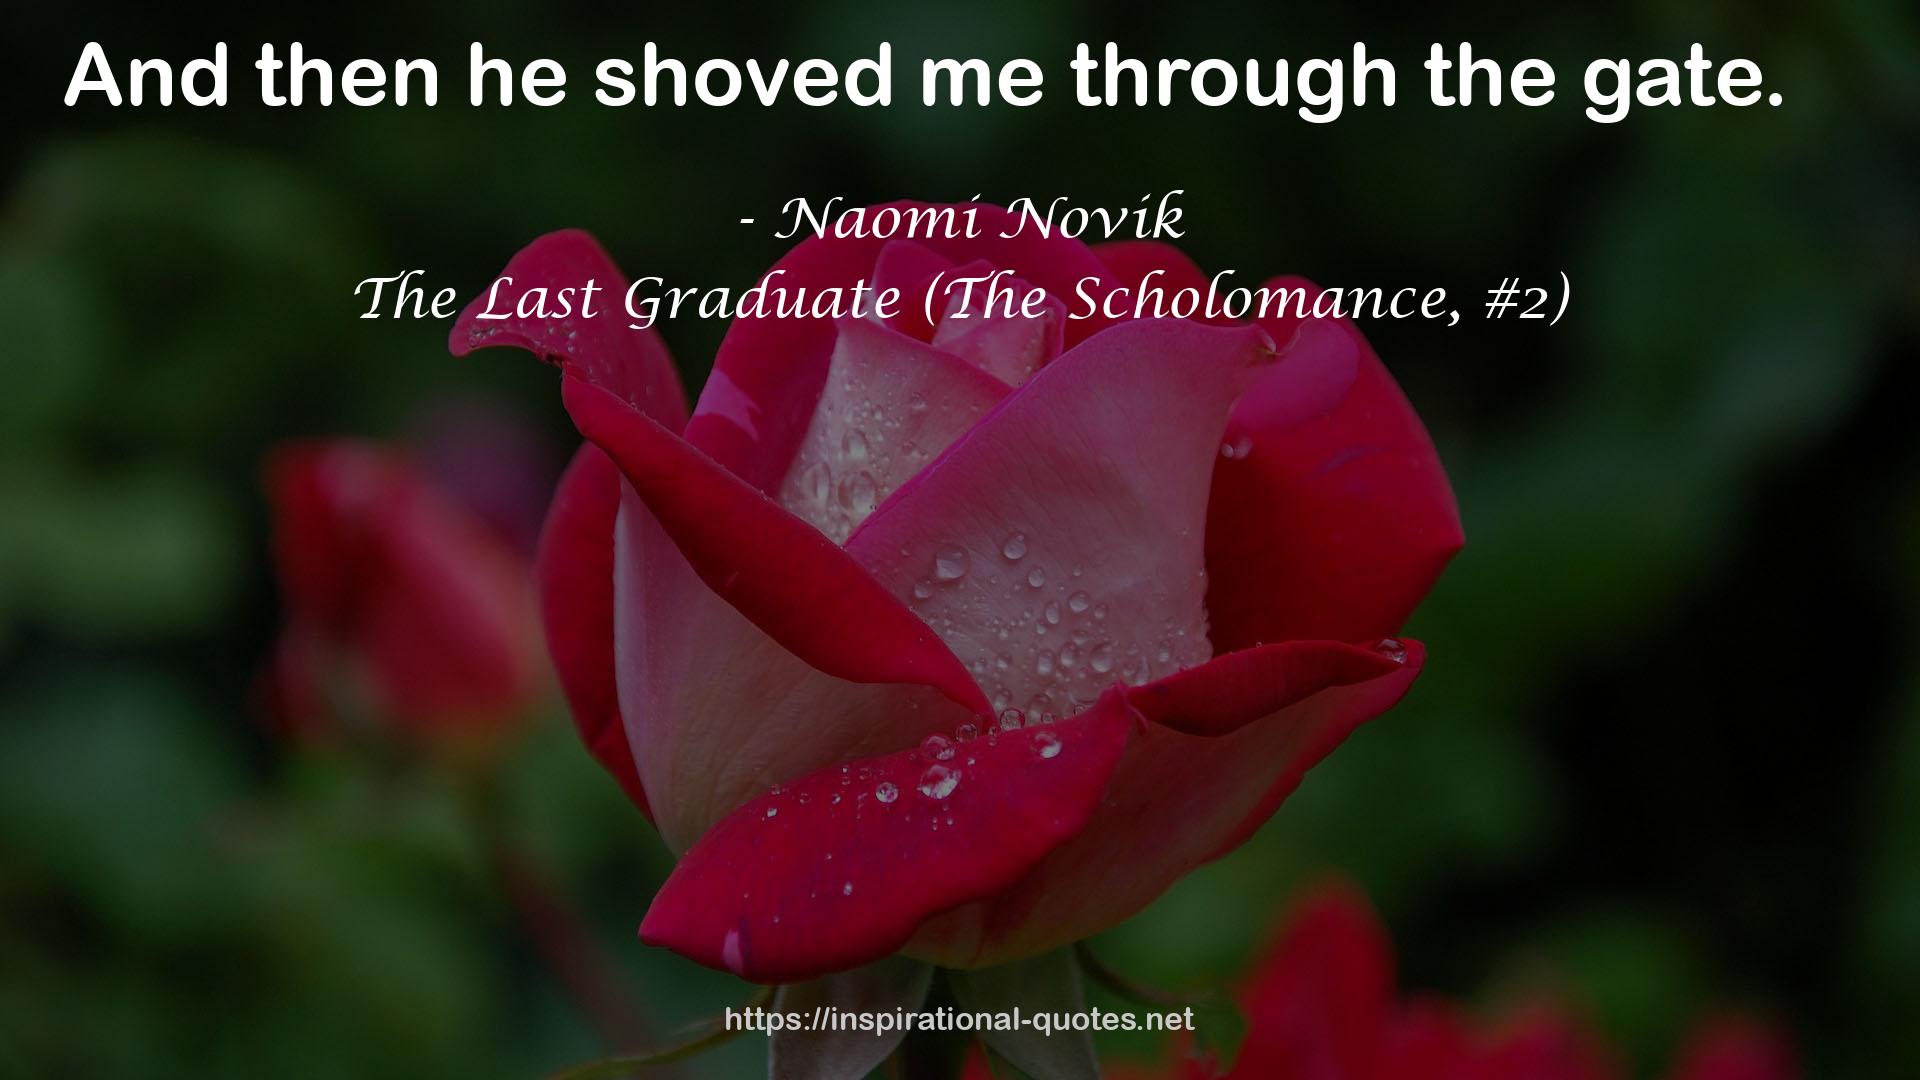 The Last Graduate (The Scholomance, #2) QUOTES